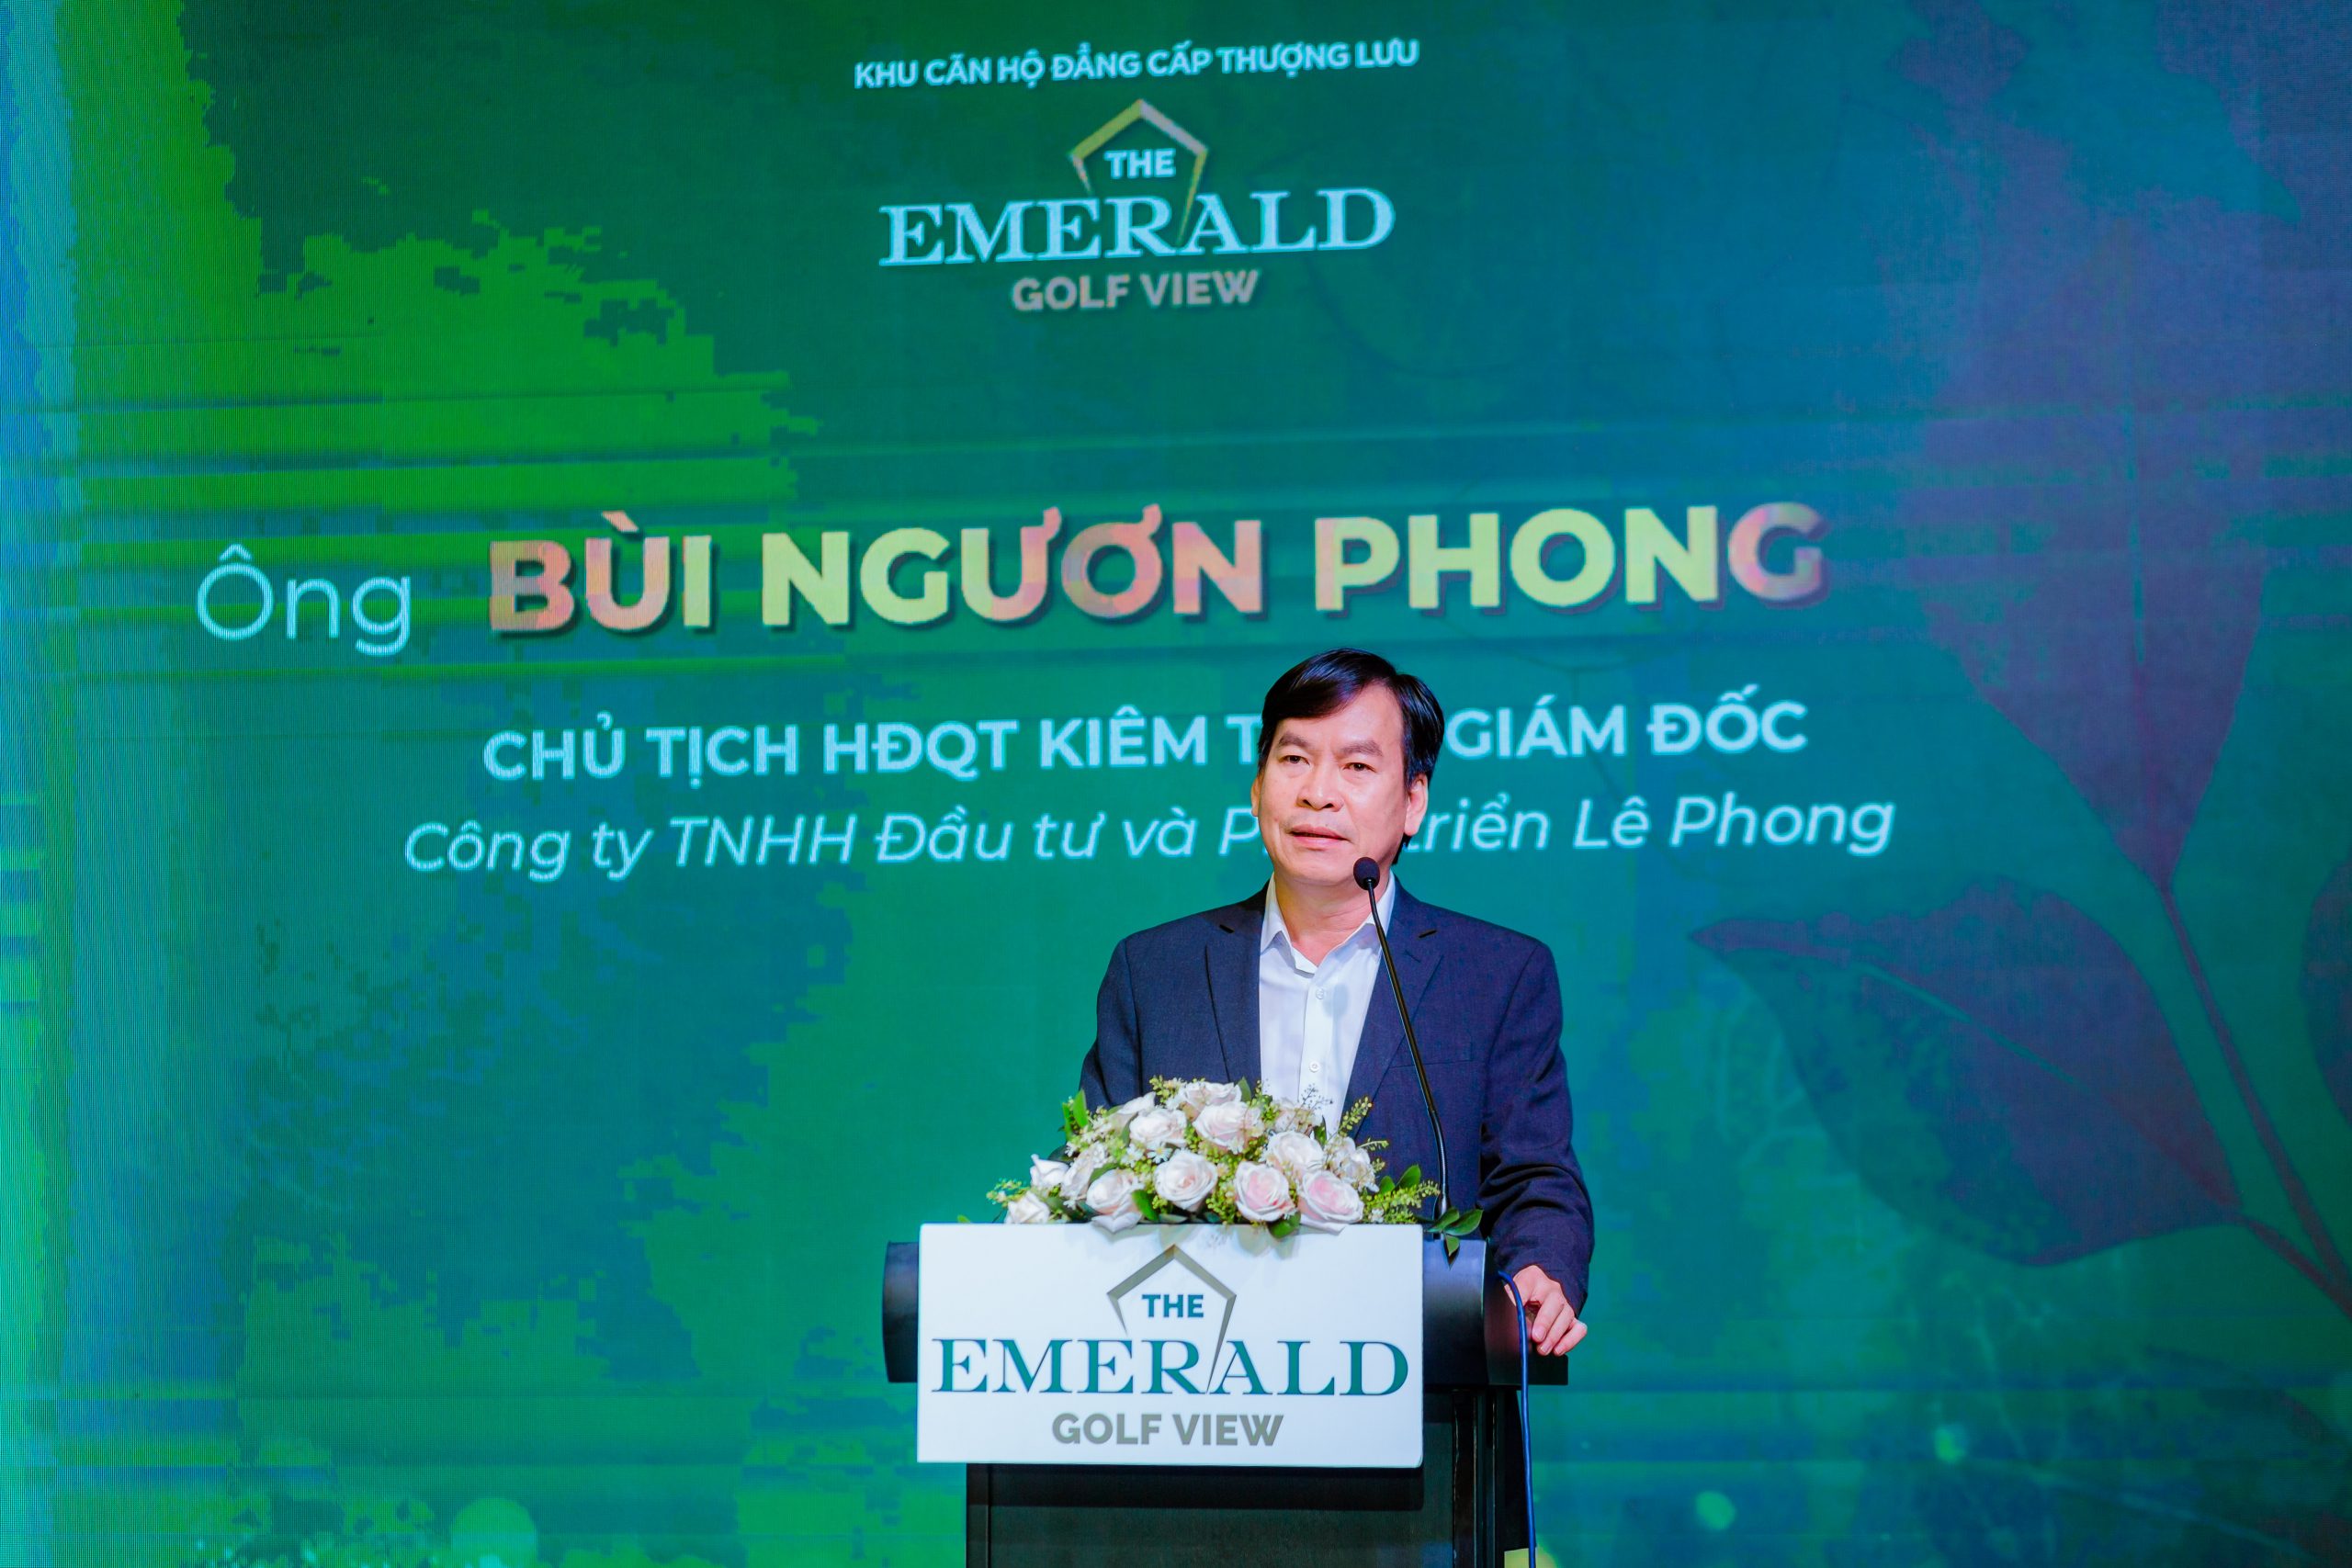 Ông Bùi Ngươn Phong phát biểu tại sự kiện The emerald golf view better and more